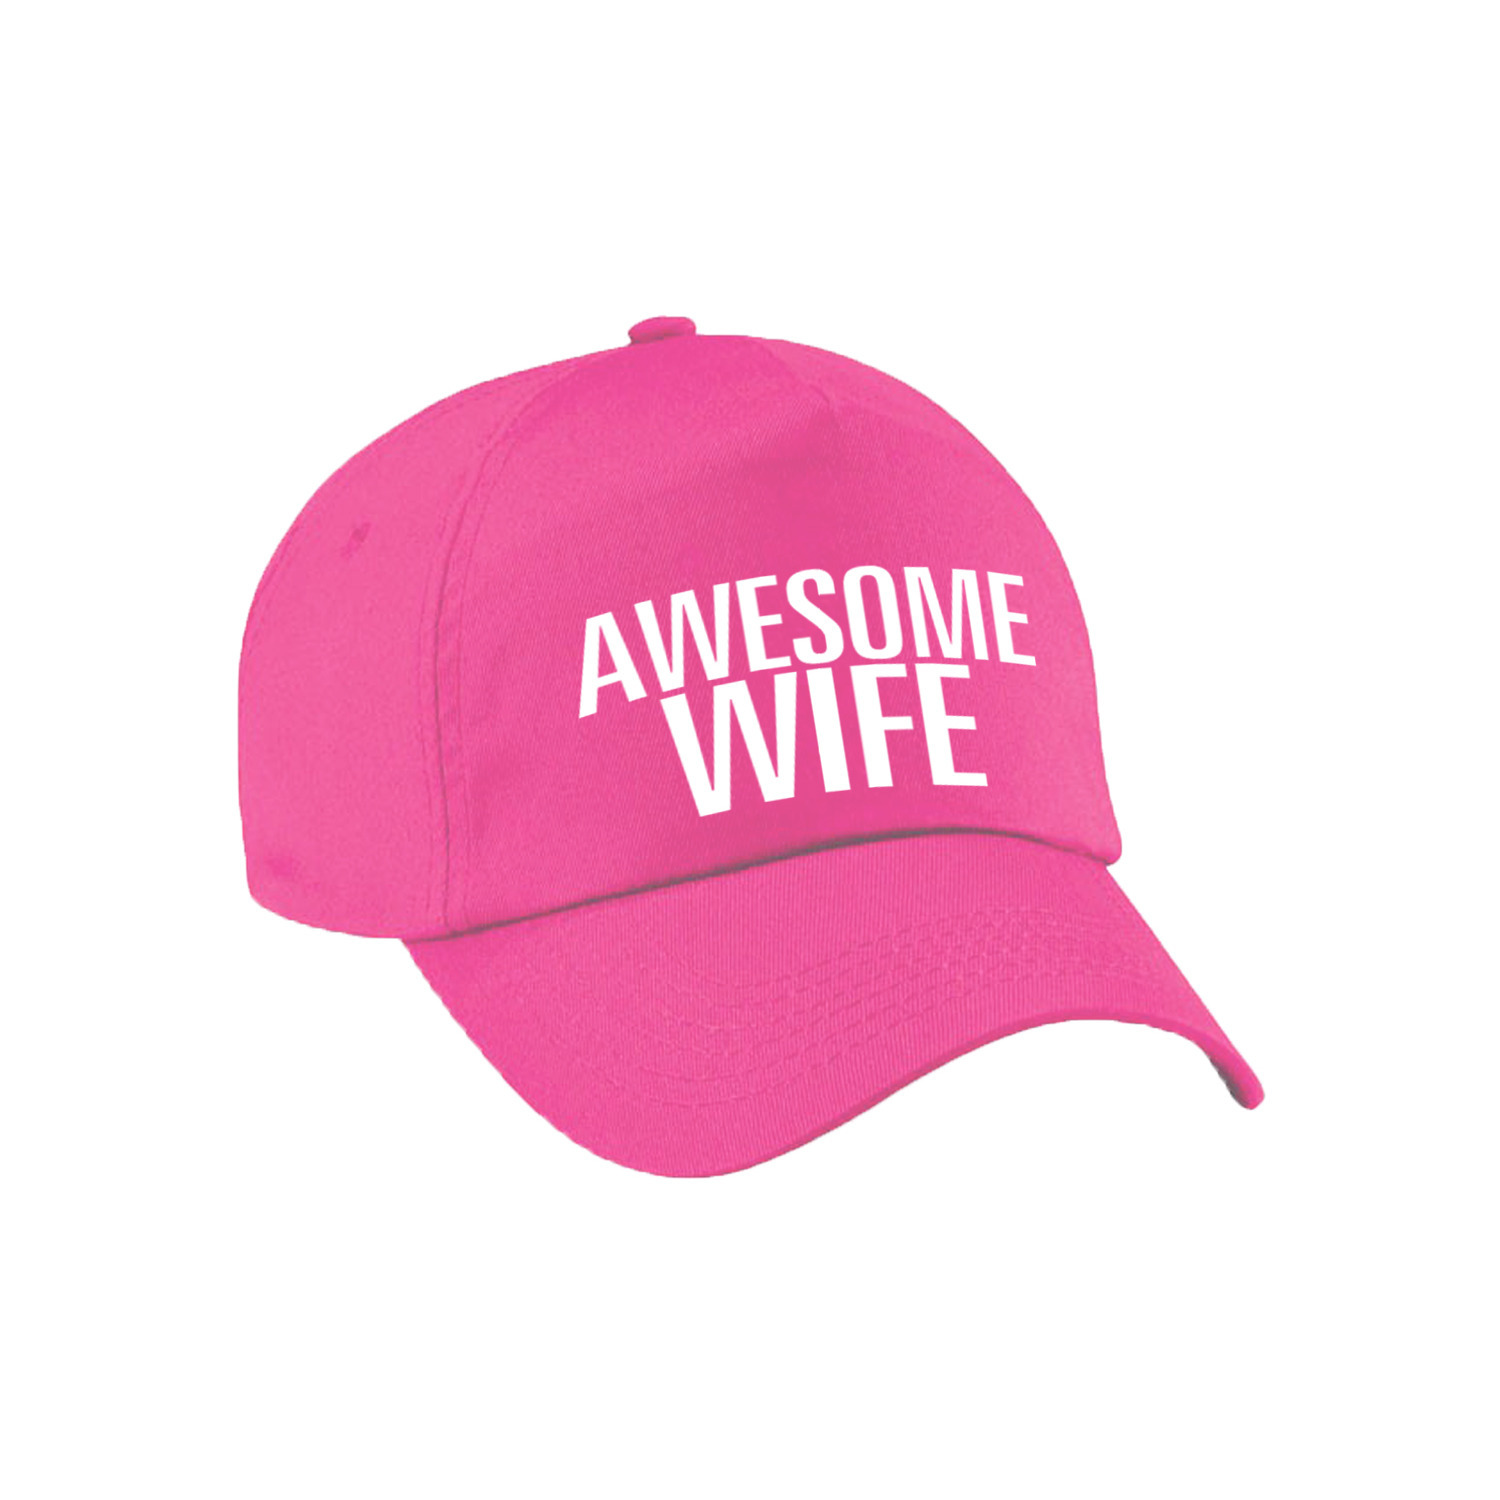 Awesome wife pet - cap voor echtgenote - vriendin roze voor dames